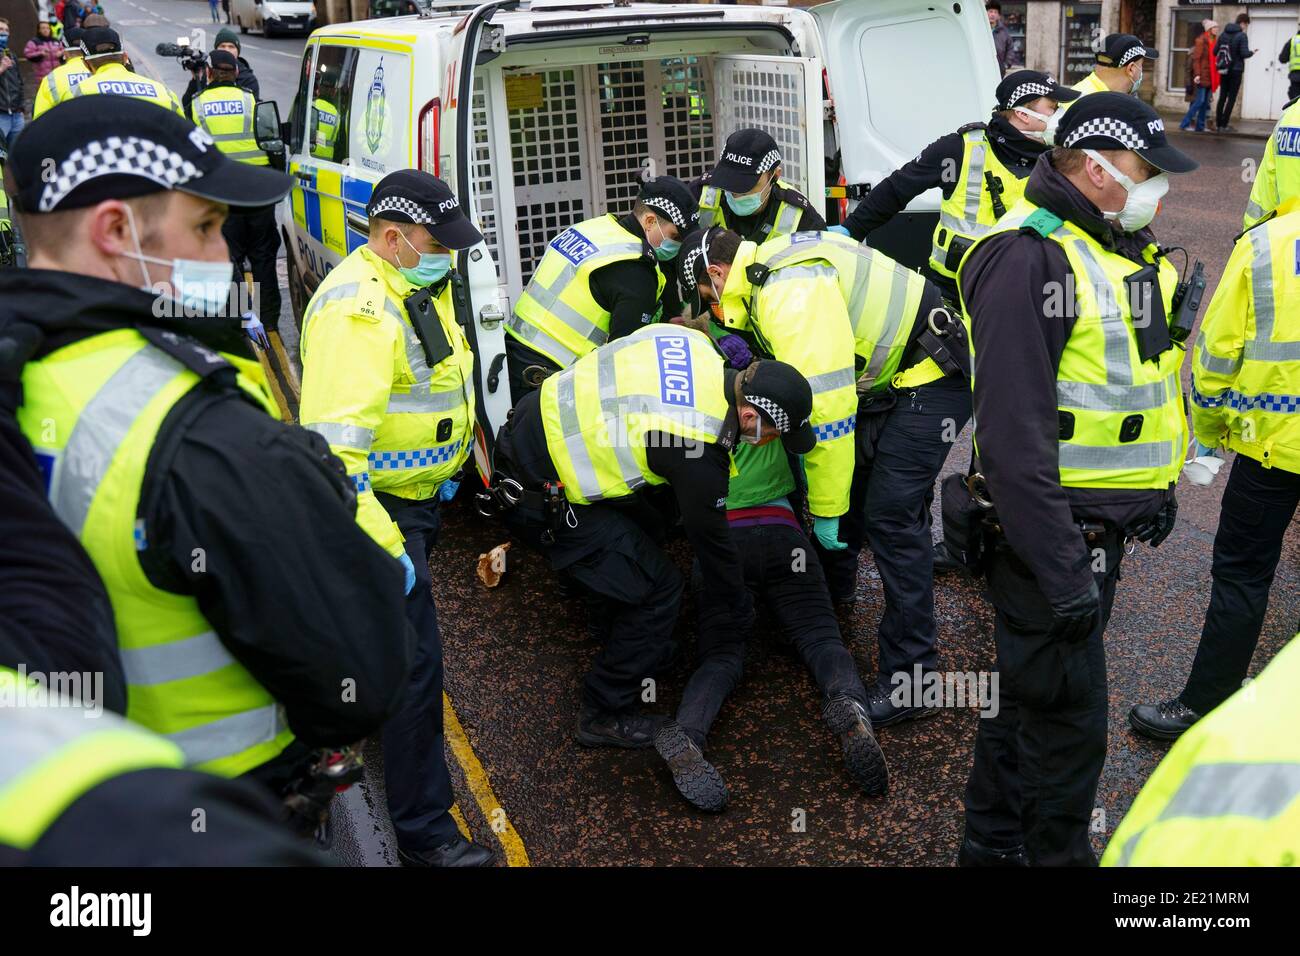 Édimbourg, Écosse, Royaume-Uni. 11 janvier 2021. Un manifestant a été arrêté aujourd'hui dans des scènes violentes lors d'une manifestation anti-verrouillage au Parlement écossais à Édimbourg. Plusieurs manifestants y ont participé, mais une présence policière lourde et agressive a empêché la manifestation et prévu une marche à Bute House. Au cours du confinement national de Covid-19, de telles manifestations sont illégales et la police a conseillé aux gens de ne pas assister à la manifestation. Pic; le manifestant féminin est arrêté et intégré dans une camionnette de police. Iain Masterton/Alay Live News Banque D'Images